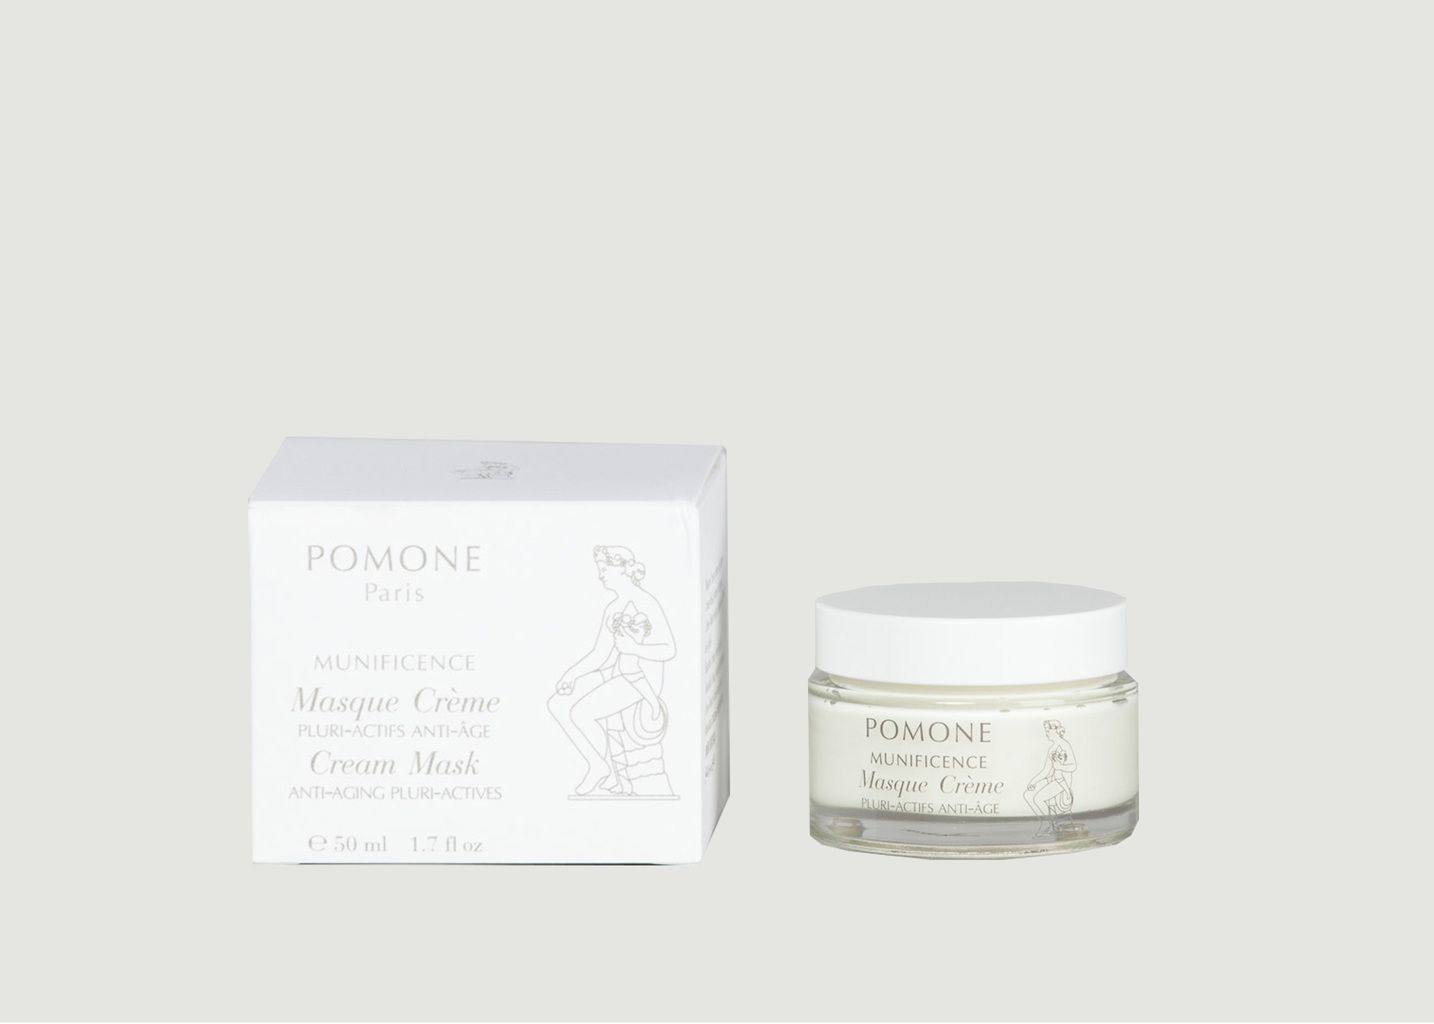 Masque Crème - Pomone